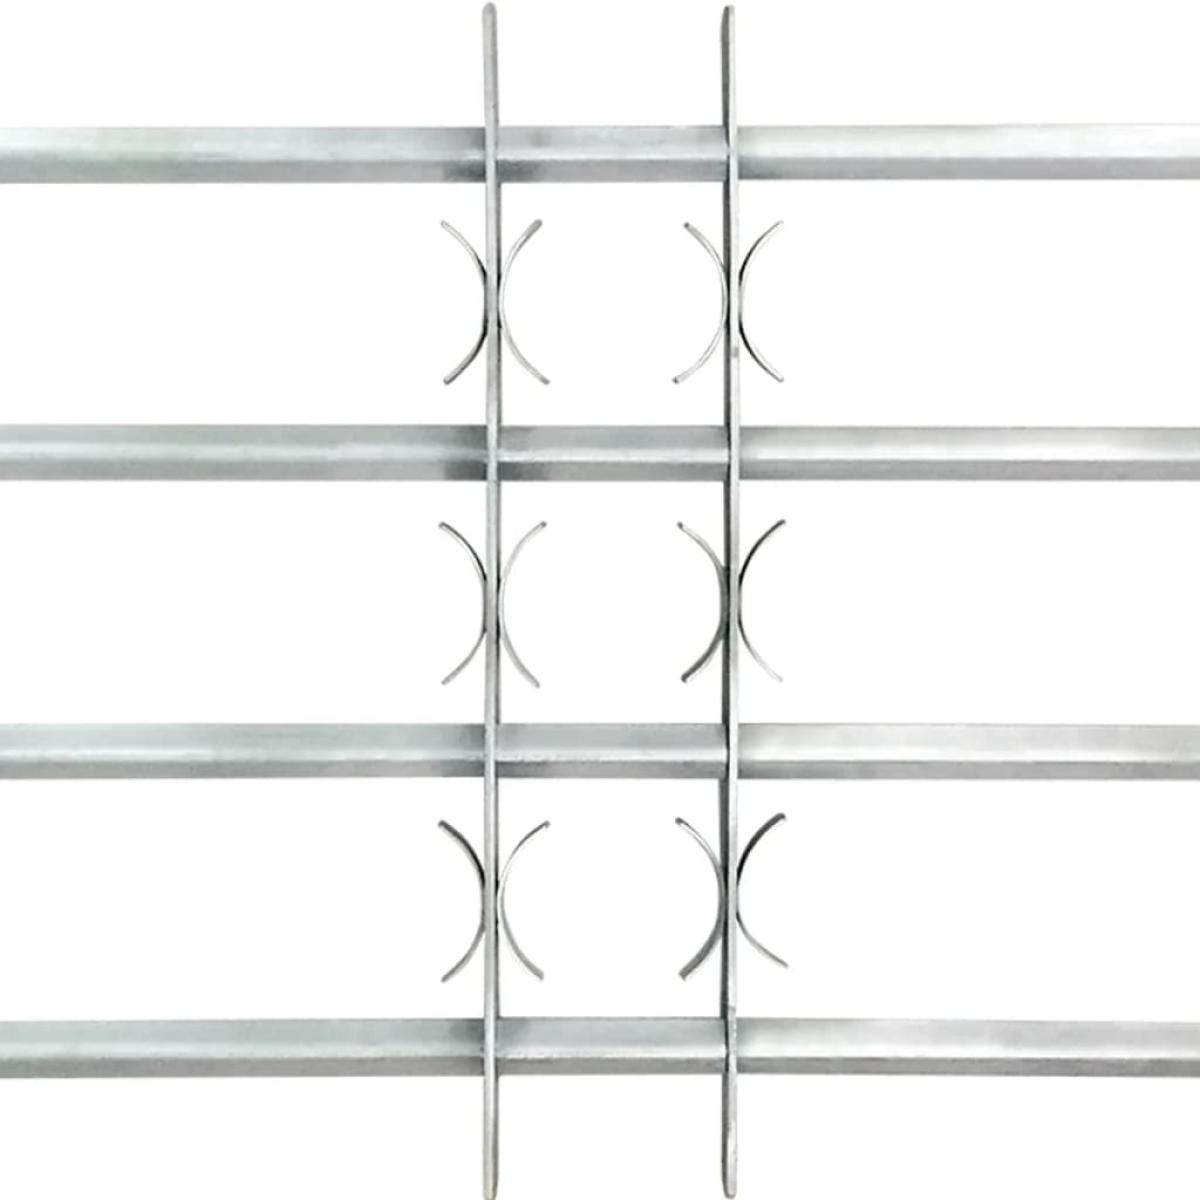 Reja de seguridad ajustable ventana con 4 barras 1000-1500 mm